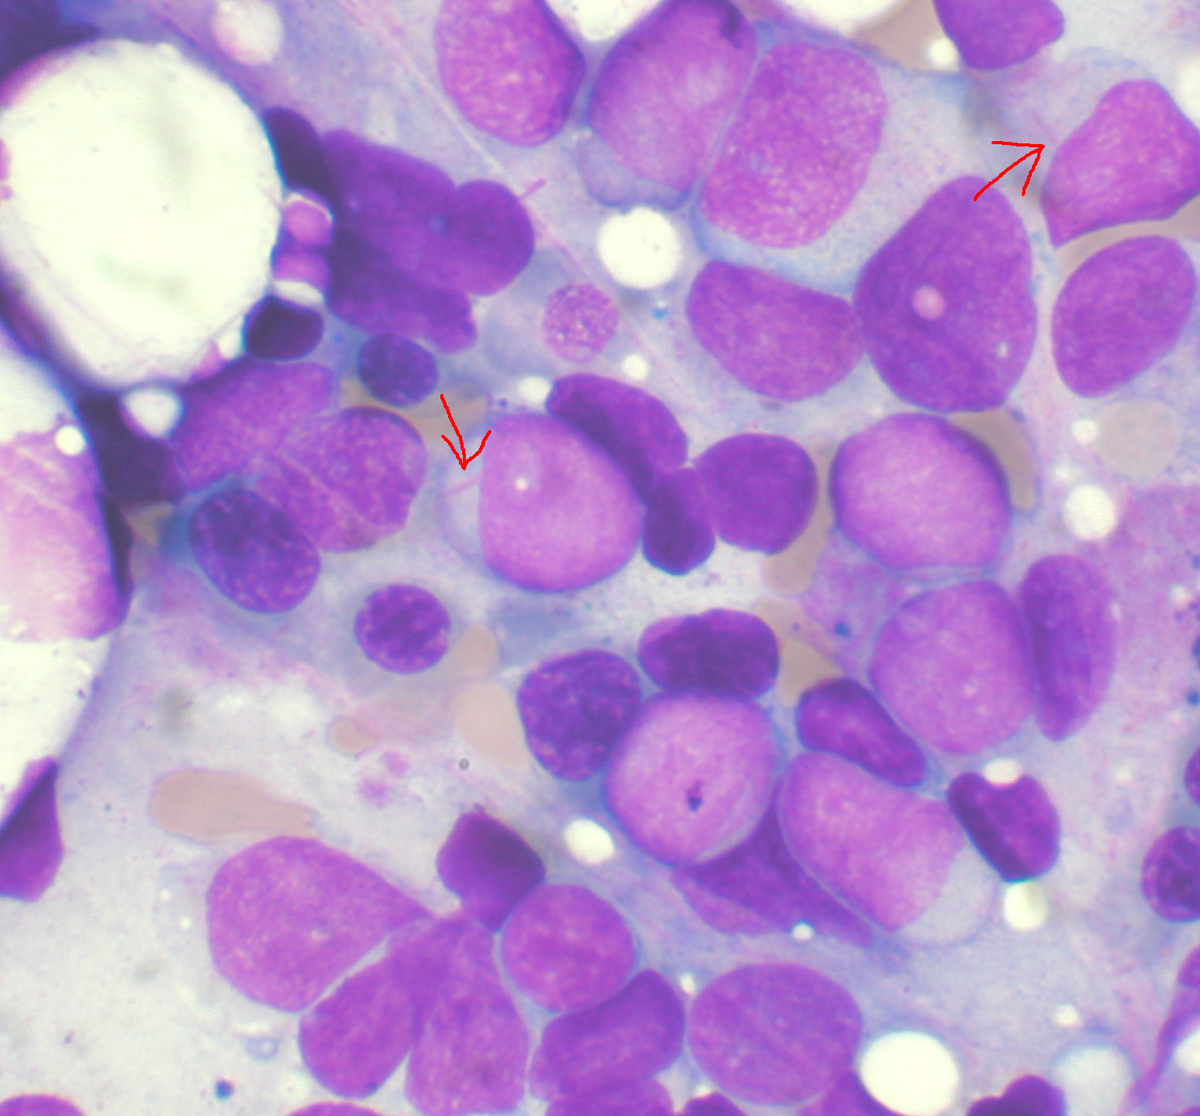 anemia x leucemia is papilloma tumor